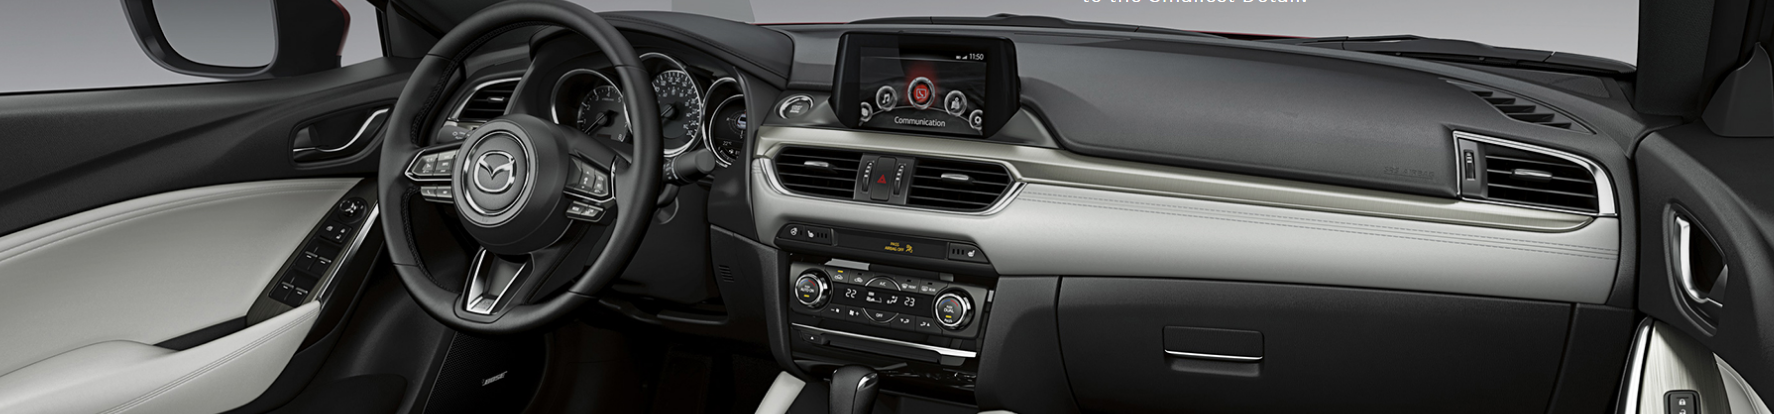 2017-mazda6-interior-dashboard